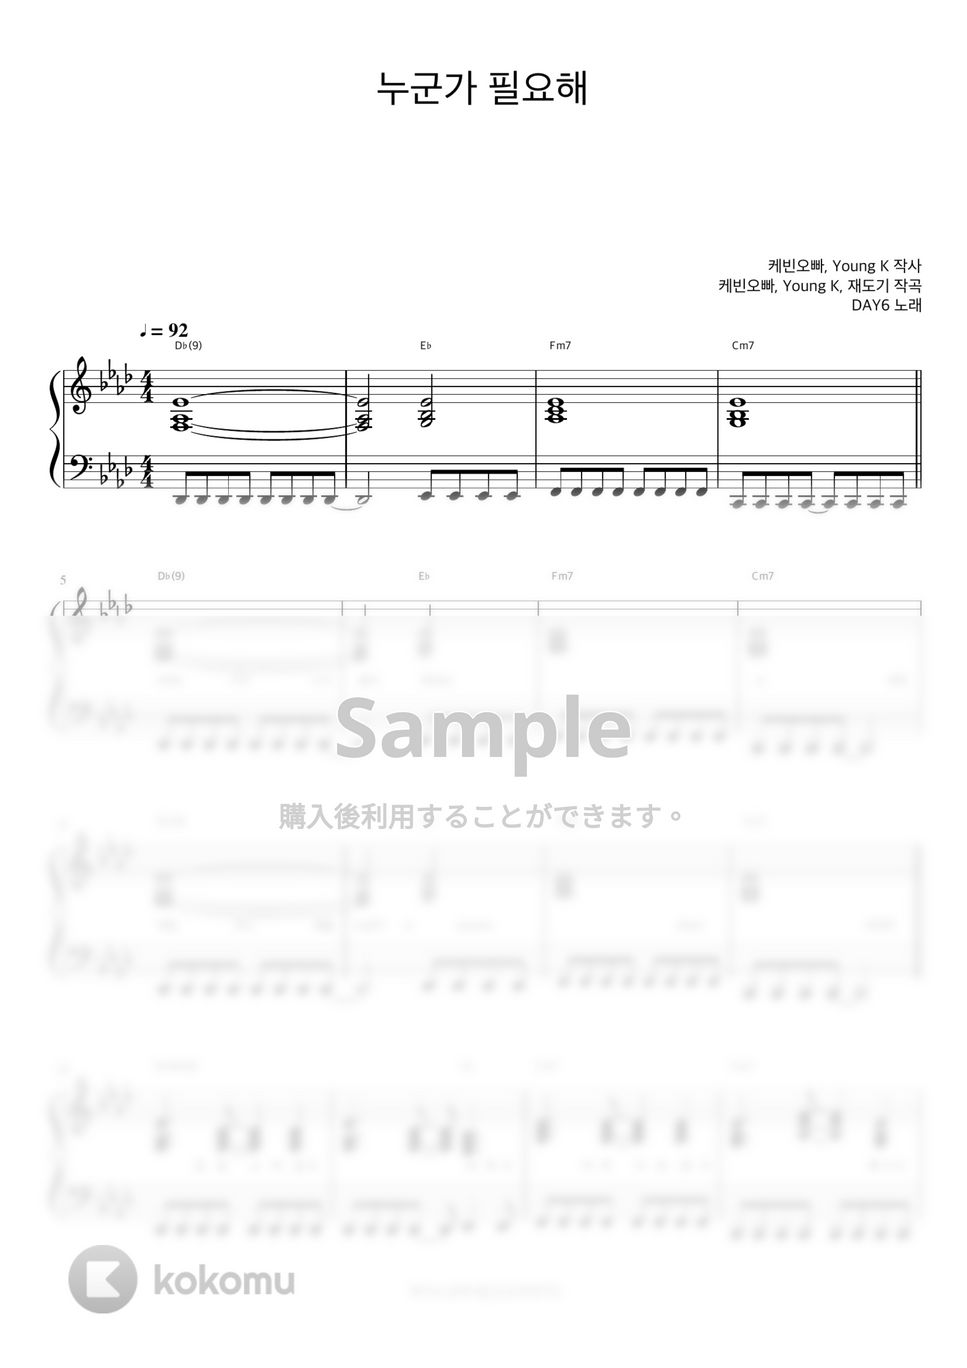 DAY6 - I Need Somebody (伴奏楽譜) by 피아노정류장